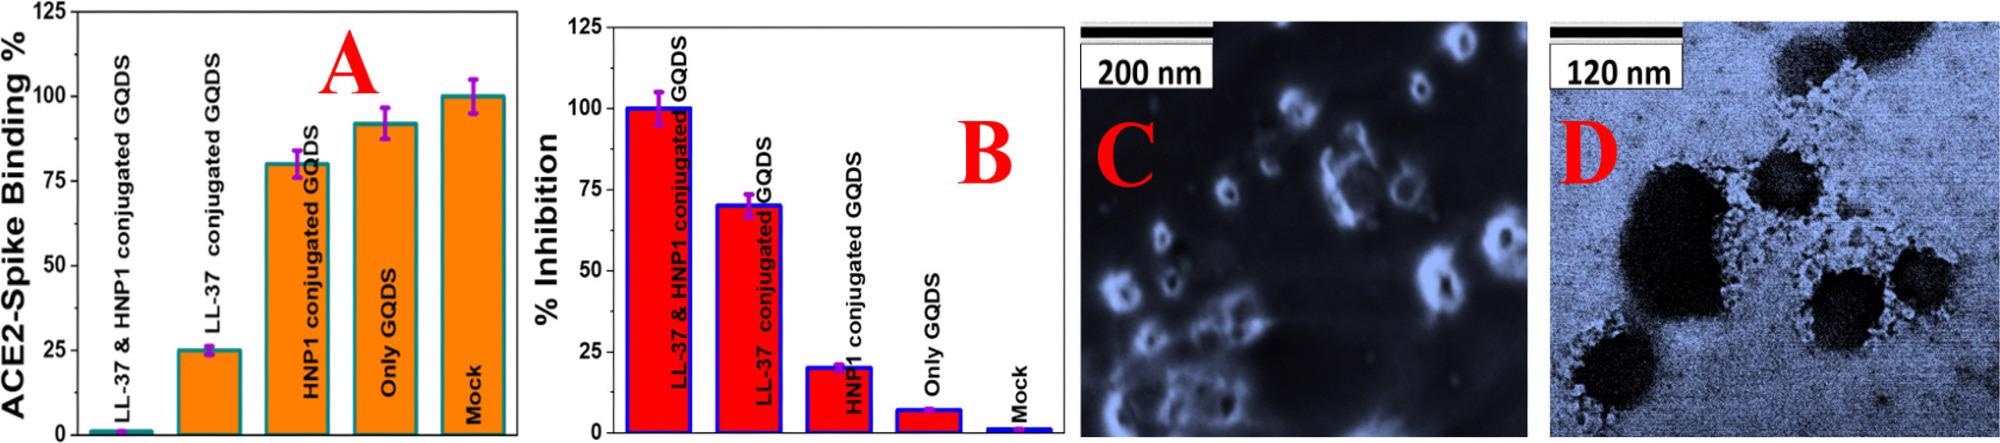 （A）杆状病毒假型与SARS-CoV-2δ变体（B.1.617.2）刺突蛋白和ACE2在HEK-293T细胞上的相互作用，使用荧光成像测量。（B）在缓冲液（Mock），GQDs（30μg/ mL），HNP1（4μg/ mL）附着的GQDs（30μg/ mL），LL-37（4μg/ mL）附着的GQD（30μg/ mL）和LL-37（4μg/ mL）附着的GQD（30μg/ mL）和HNP1（4μg/ mL）附着的GQD（30μg/ mL）的存在下，假型杆状病毒假型杆状病毒的抑制效率。（C）用肽附着的GQDs处理6小时时，用SARS-CoV-2δ变体（B.1.617.2）刺突蛋白假型杆状病毒的TEM图像。